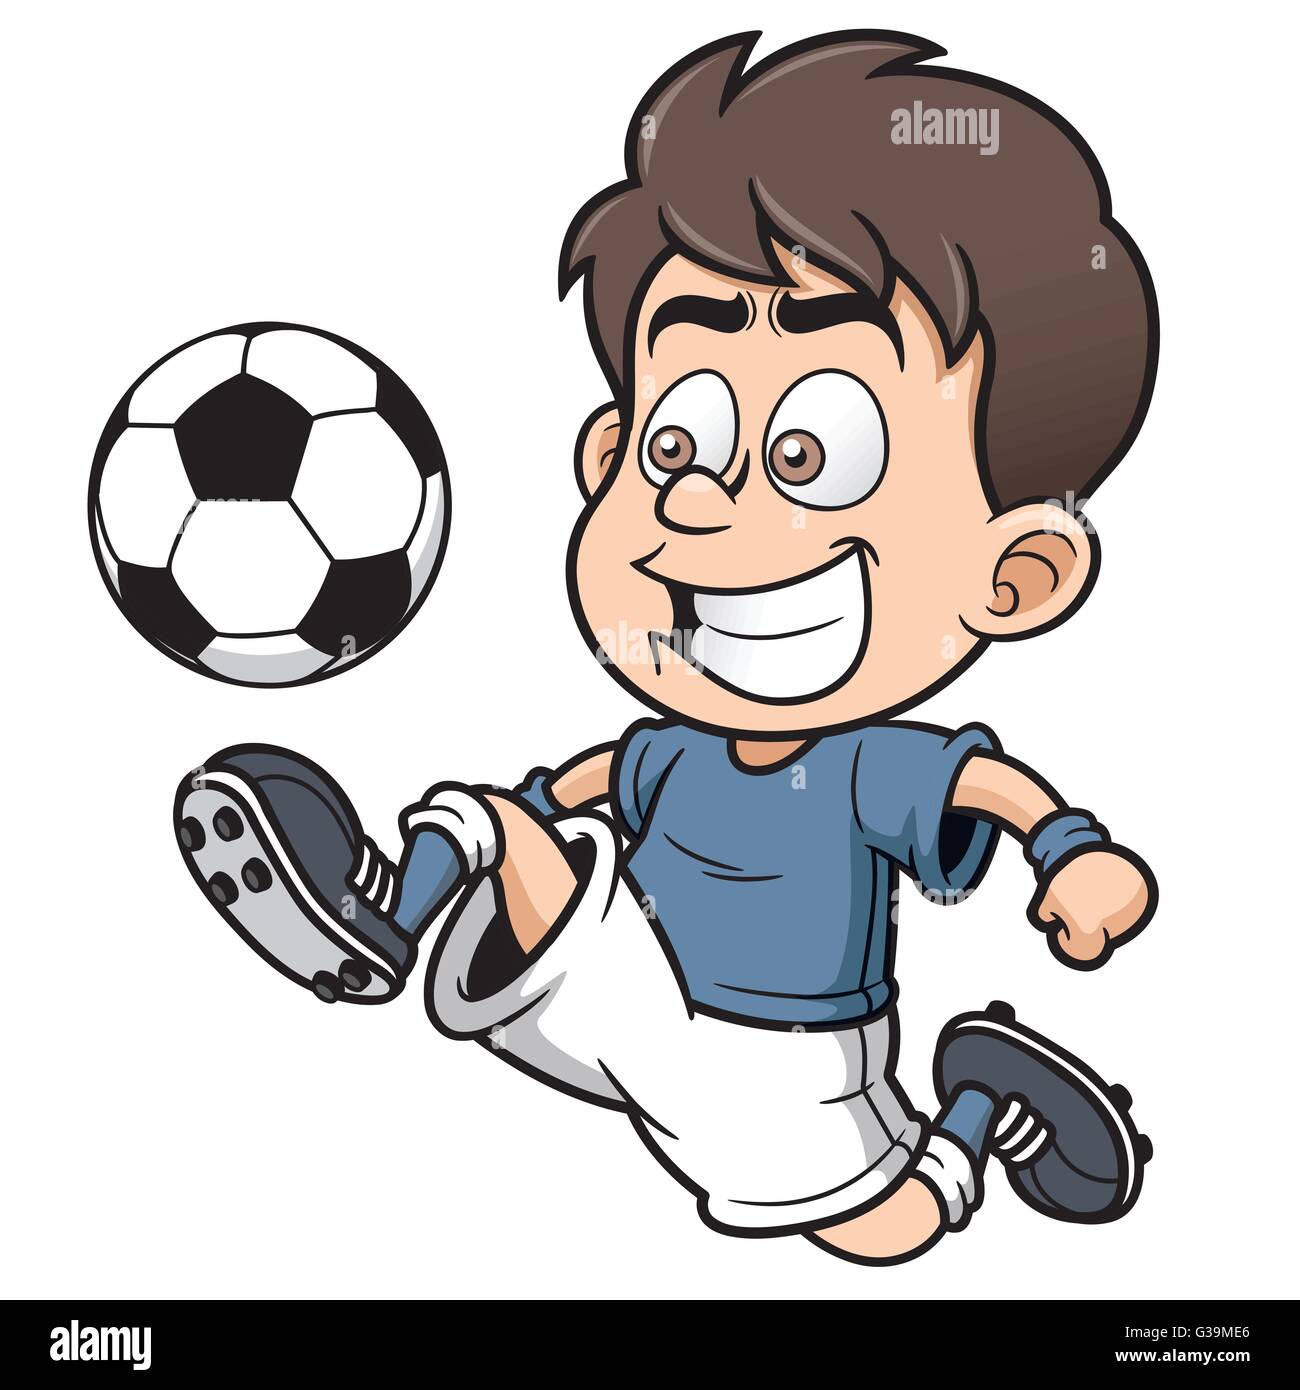 Cartone animato di calcio immagini e fotografie stock ad alta risoluzione -  Alamy